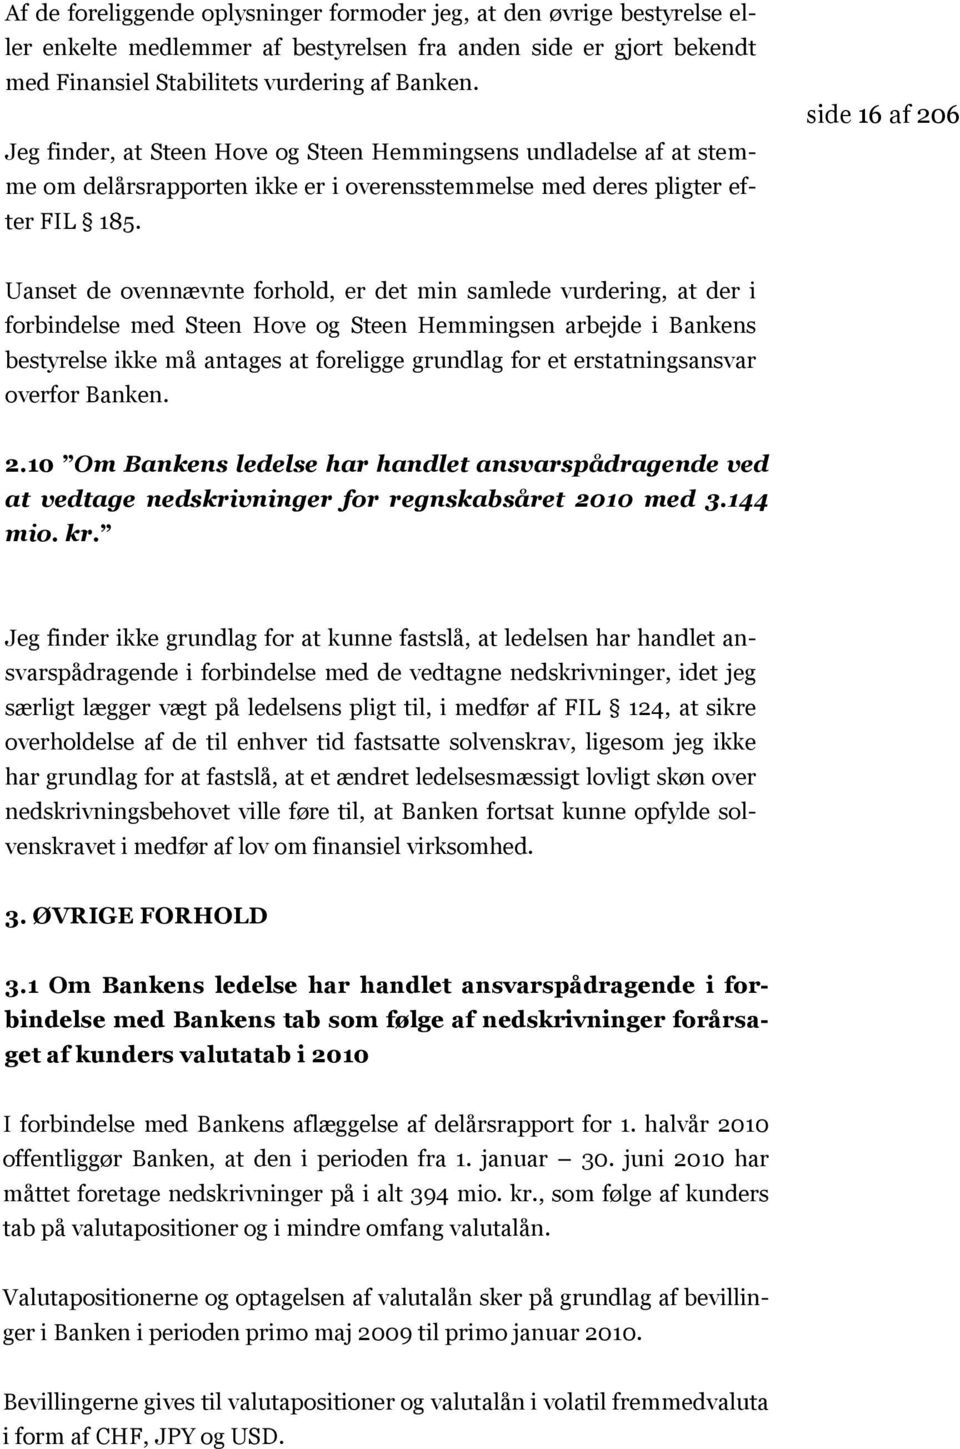 side 16 af 206 Uanset de ovennævnte forhold, er det min samlede vurdering, at der i forbindelse med Steen Hove og Steen Hemmingsen arbejde i Bankens bestyrelse ikke må antages at foreligge grundlag